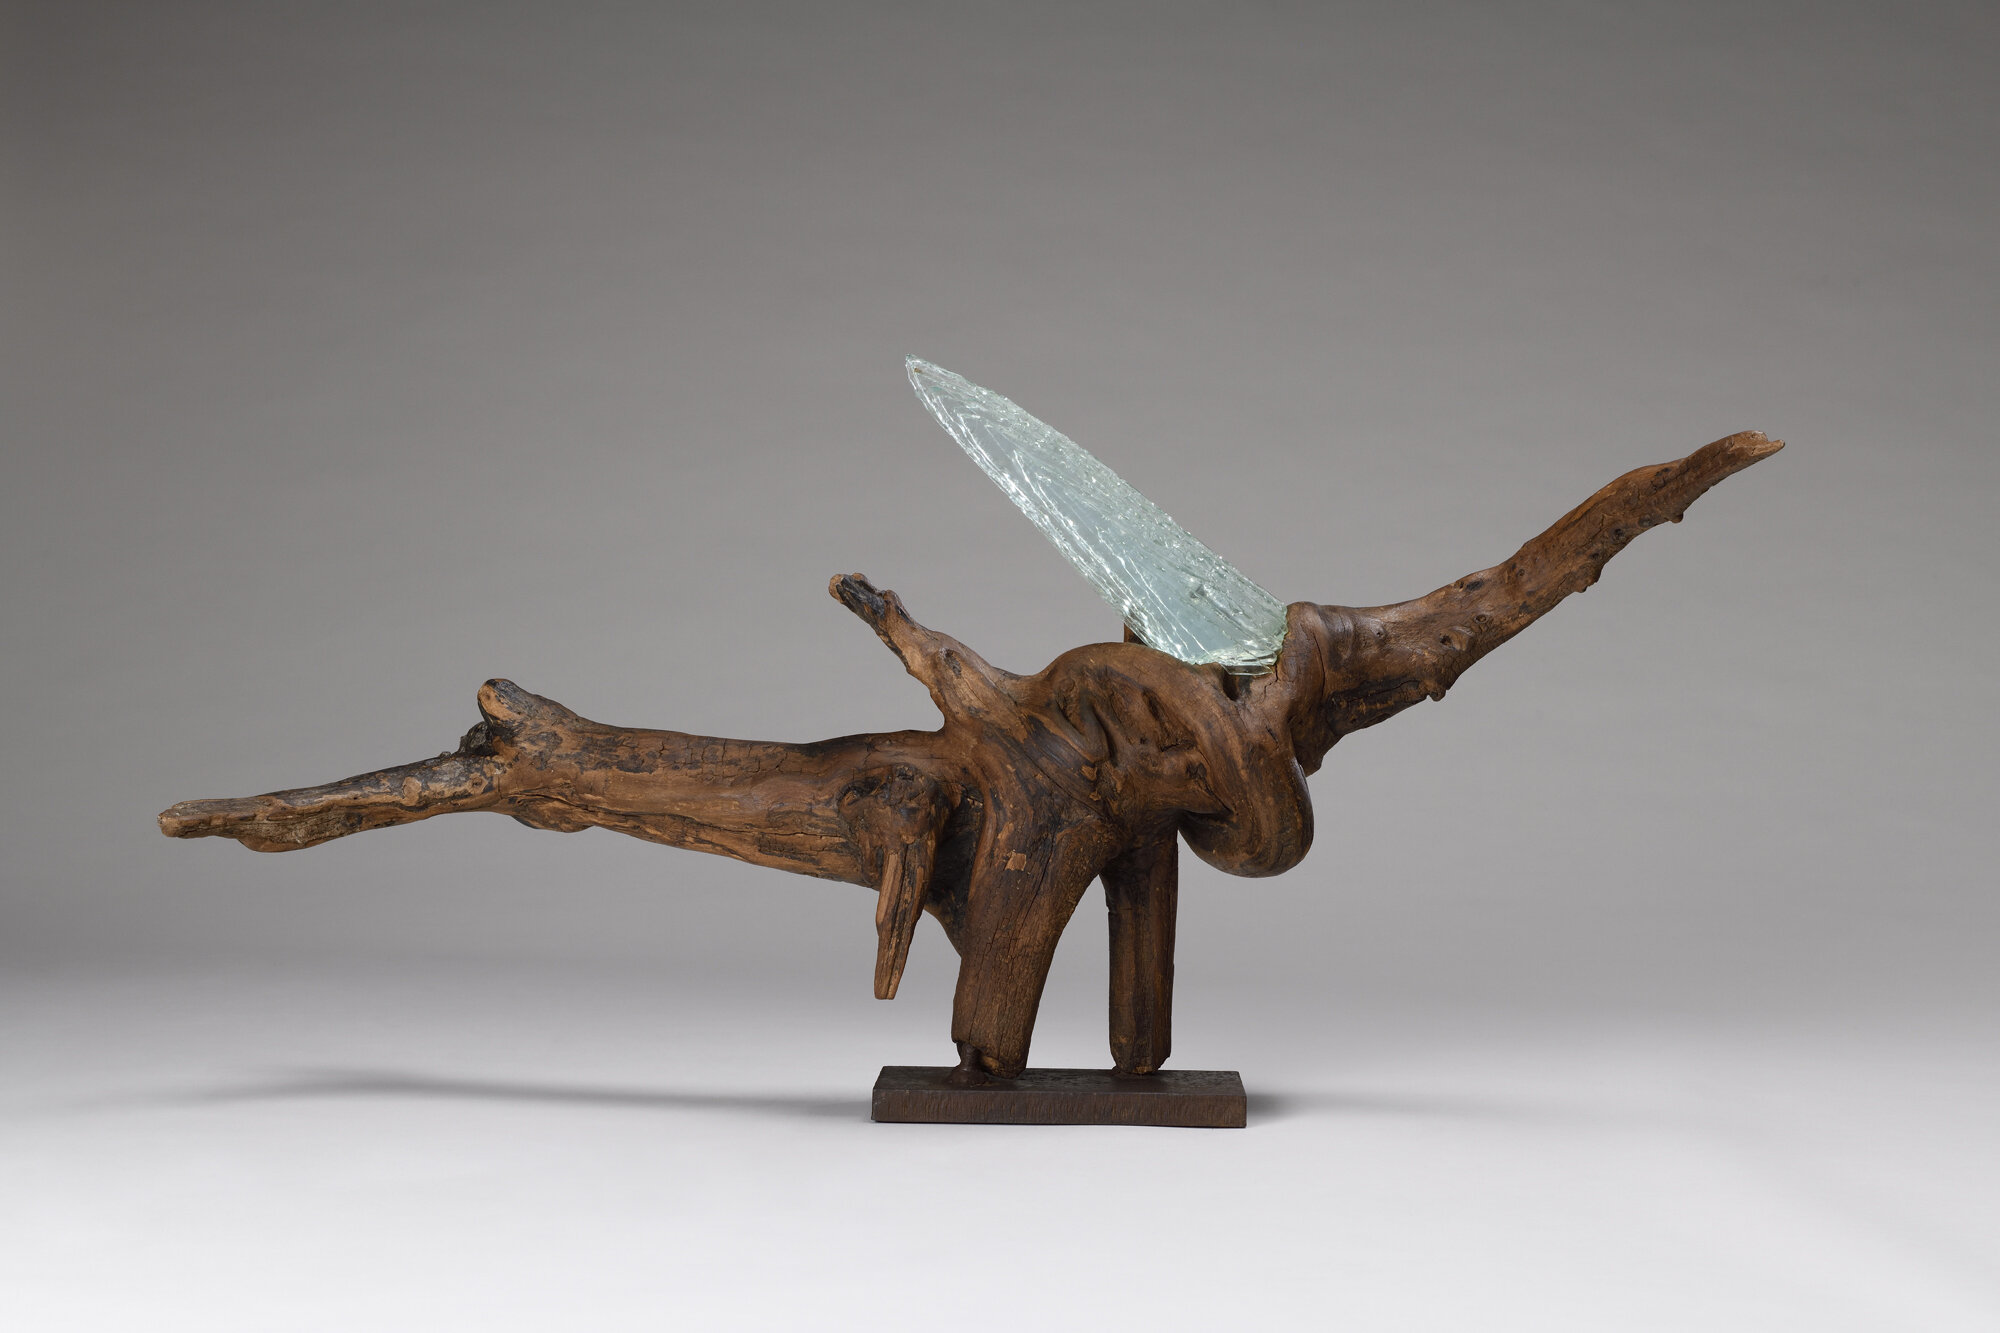 Mirmandean verso sculpture contemporaine abstraite en bois, métal et verre conçue par Bernard Froment